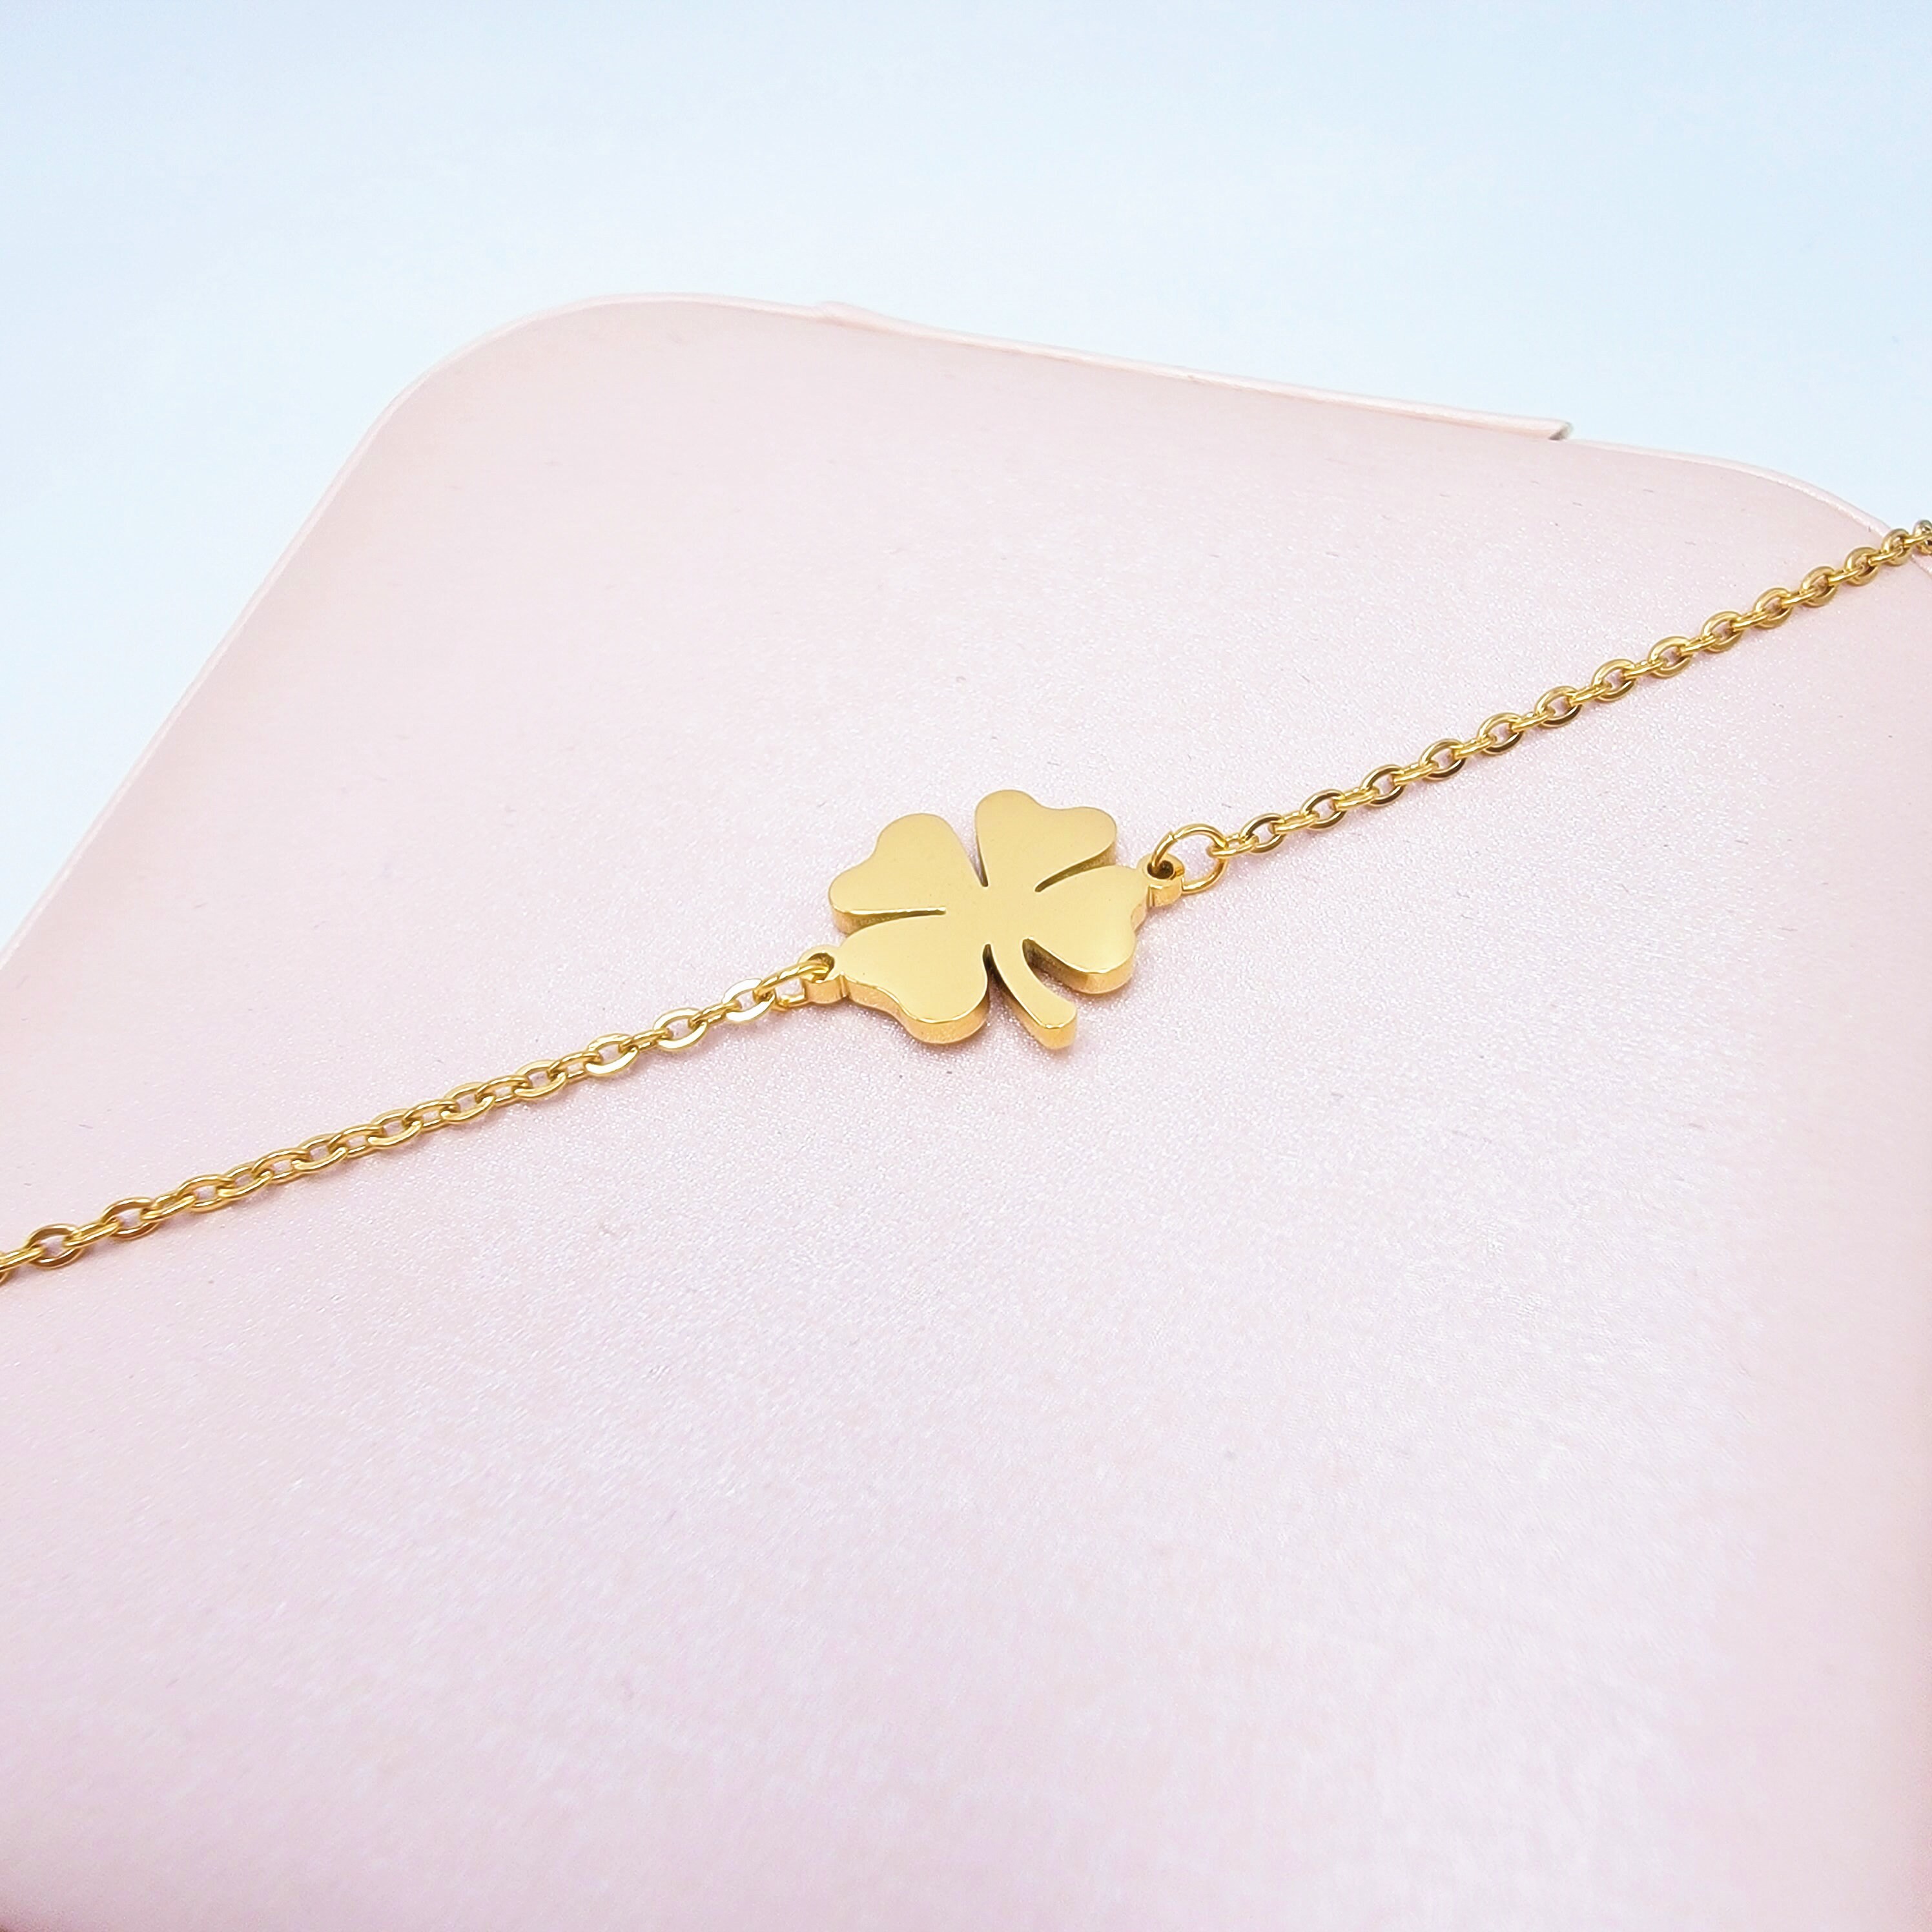 Gold clover bracelet * Green four leaf clover charm * Stacking